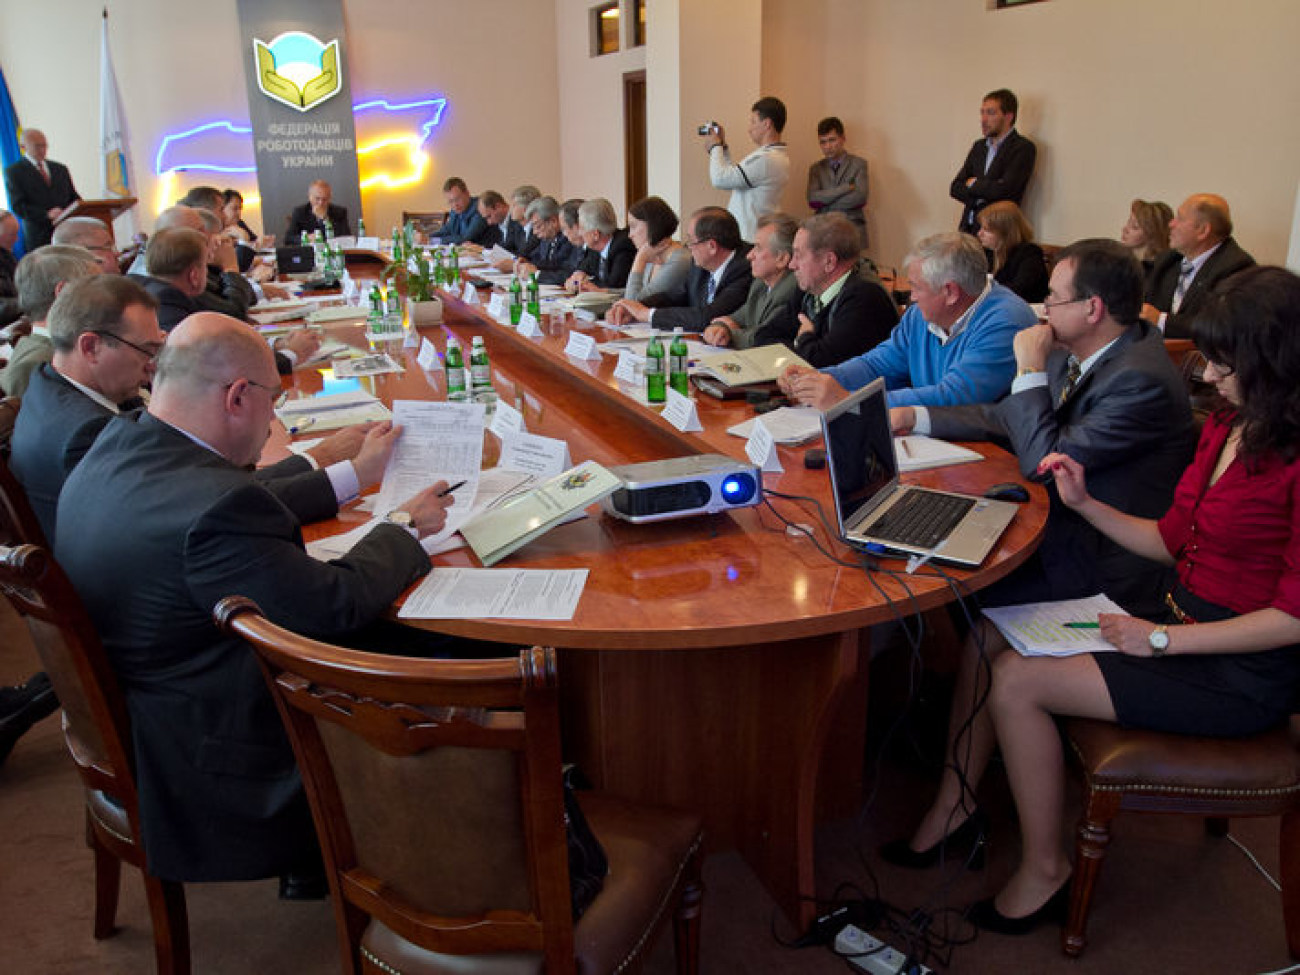 Съезд Федерации работодателей горняков Украины (ФРГУ), 9 октября 2012г.